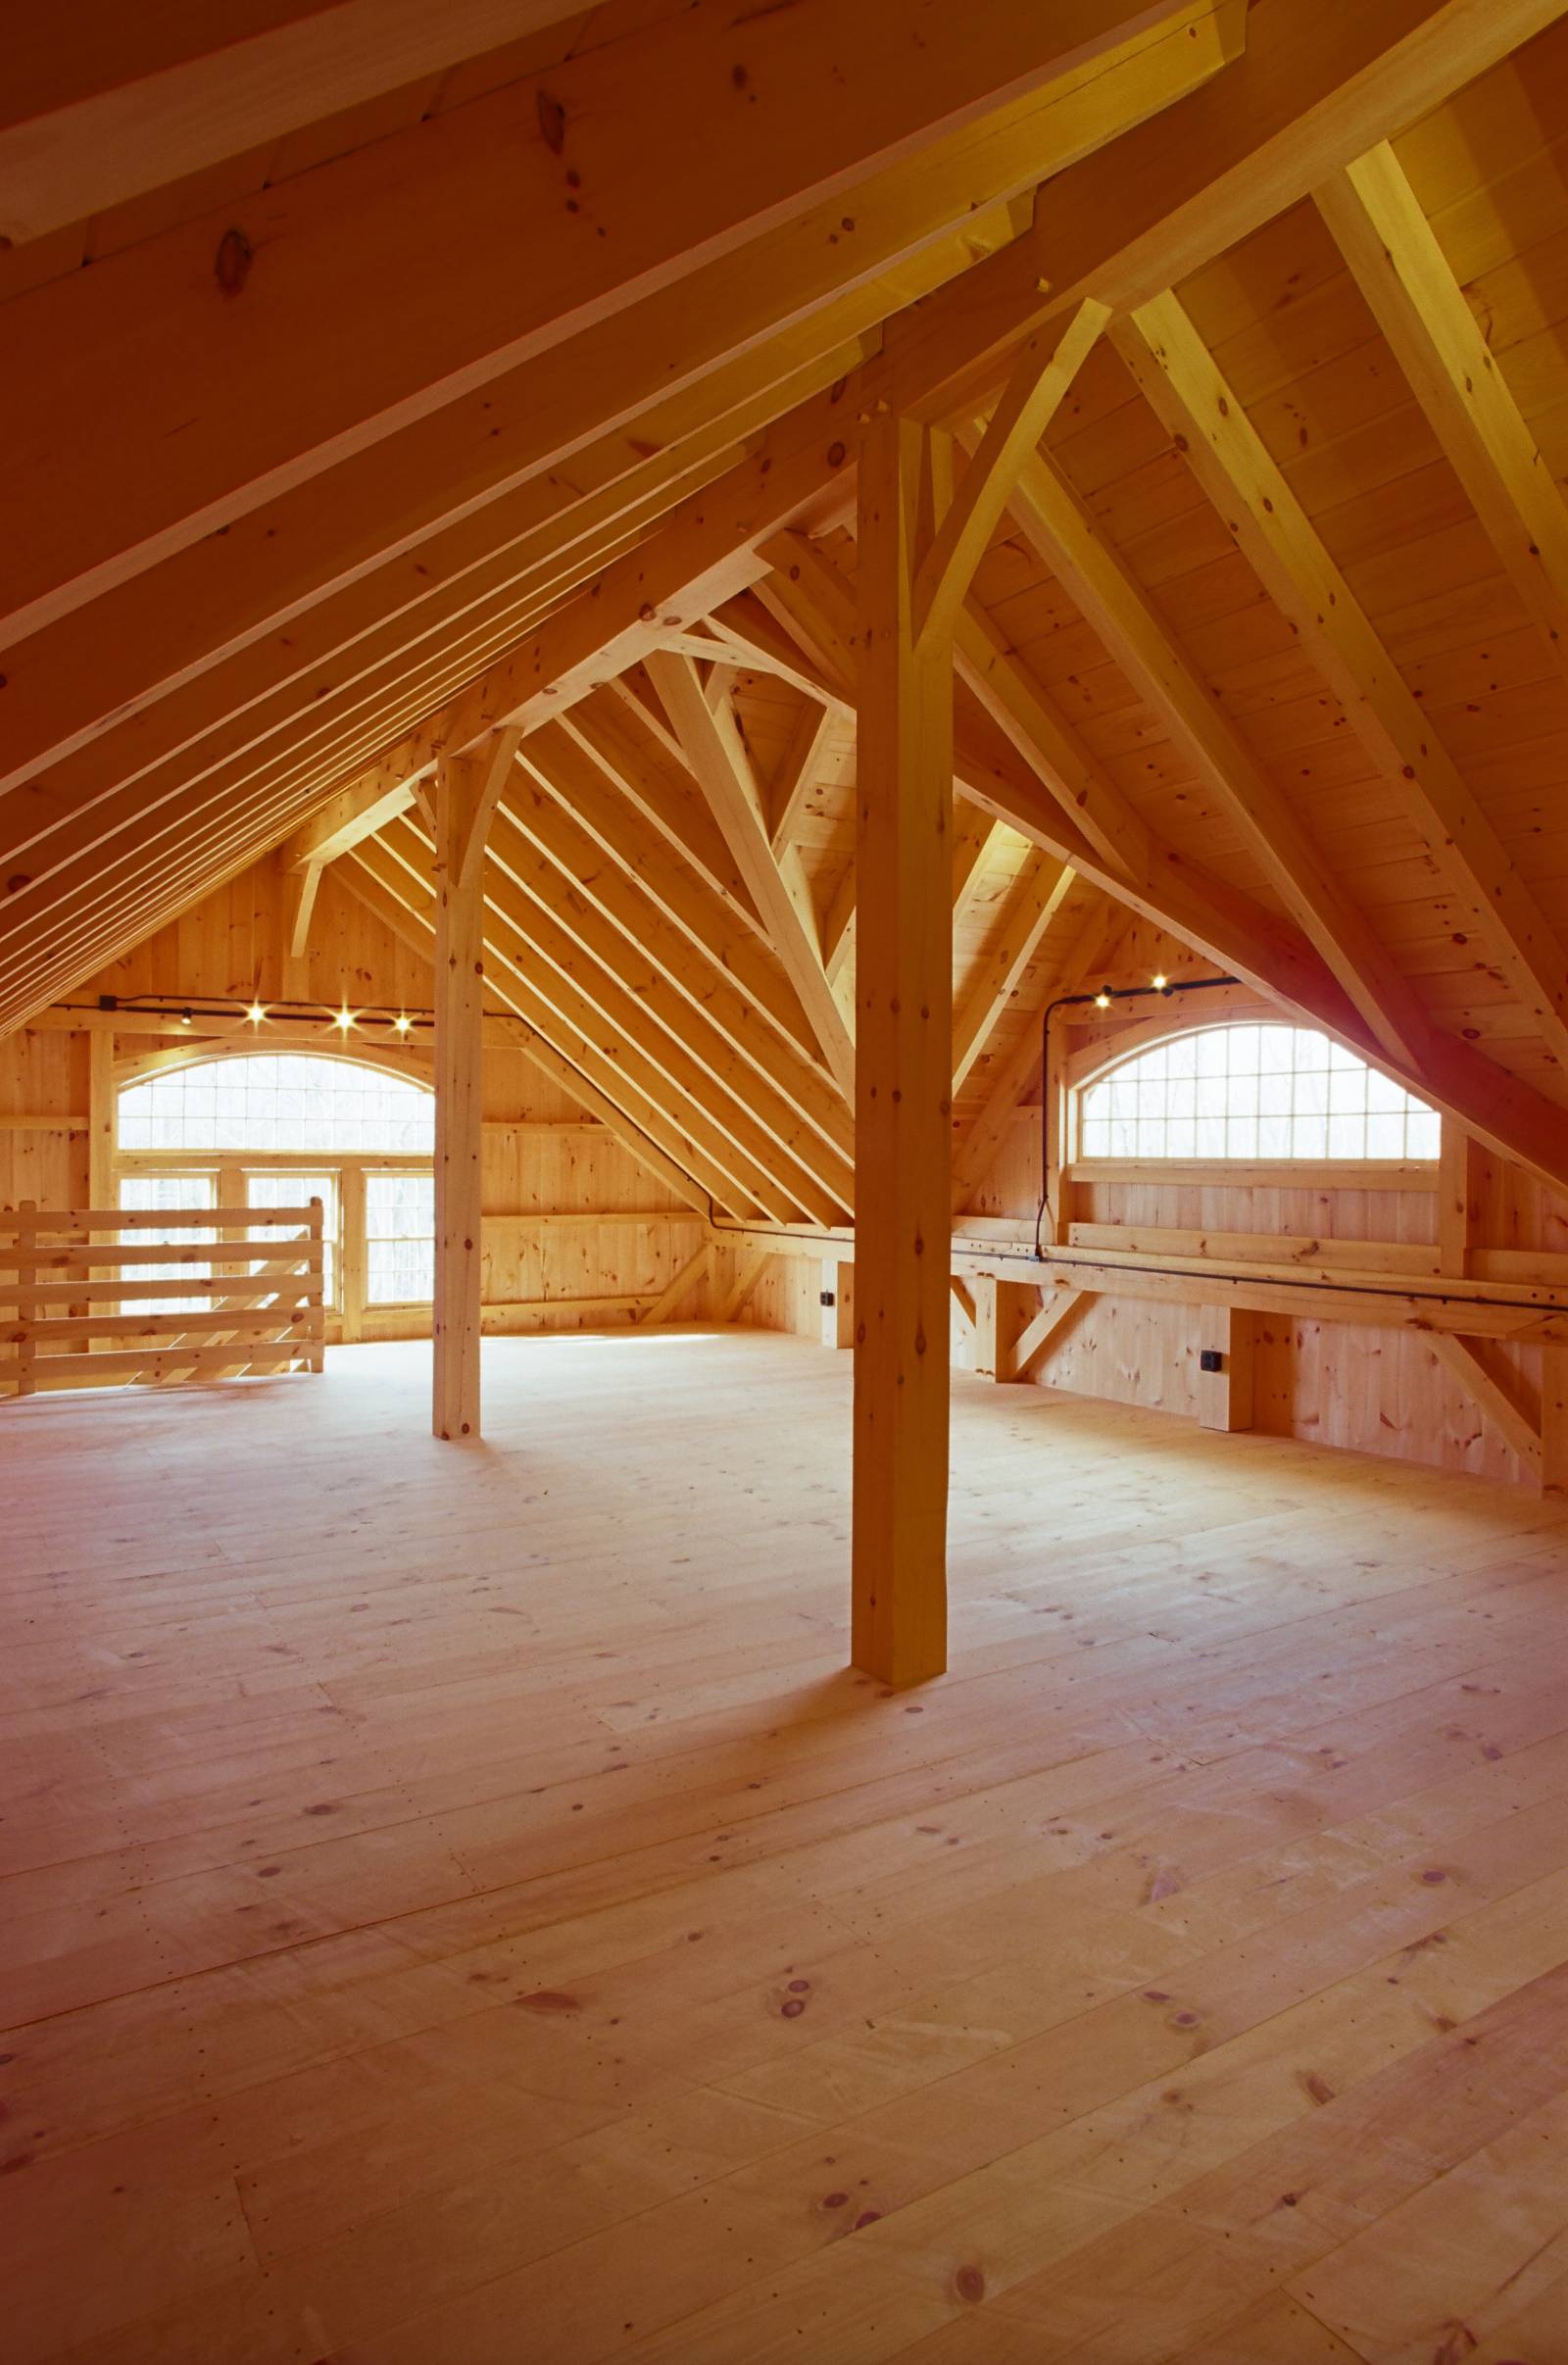 Post & Beam Barn Upstairs Interior with Ridge Beam & Reverse Gable Dormer